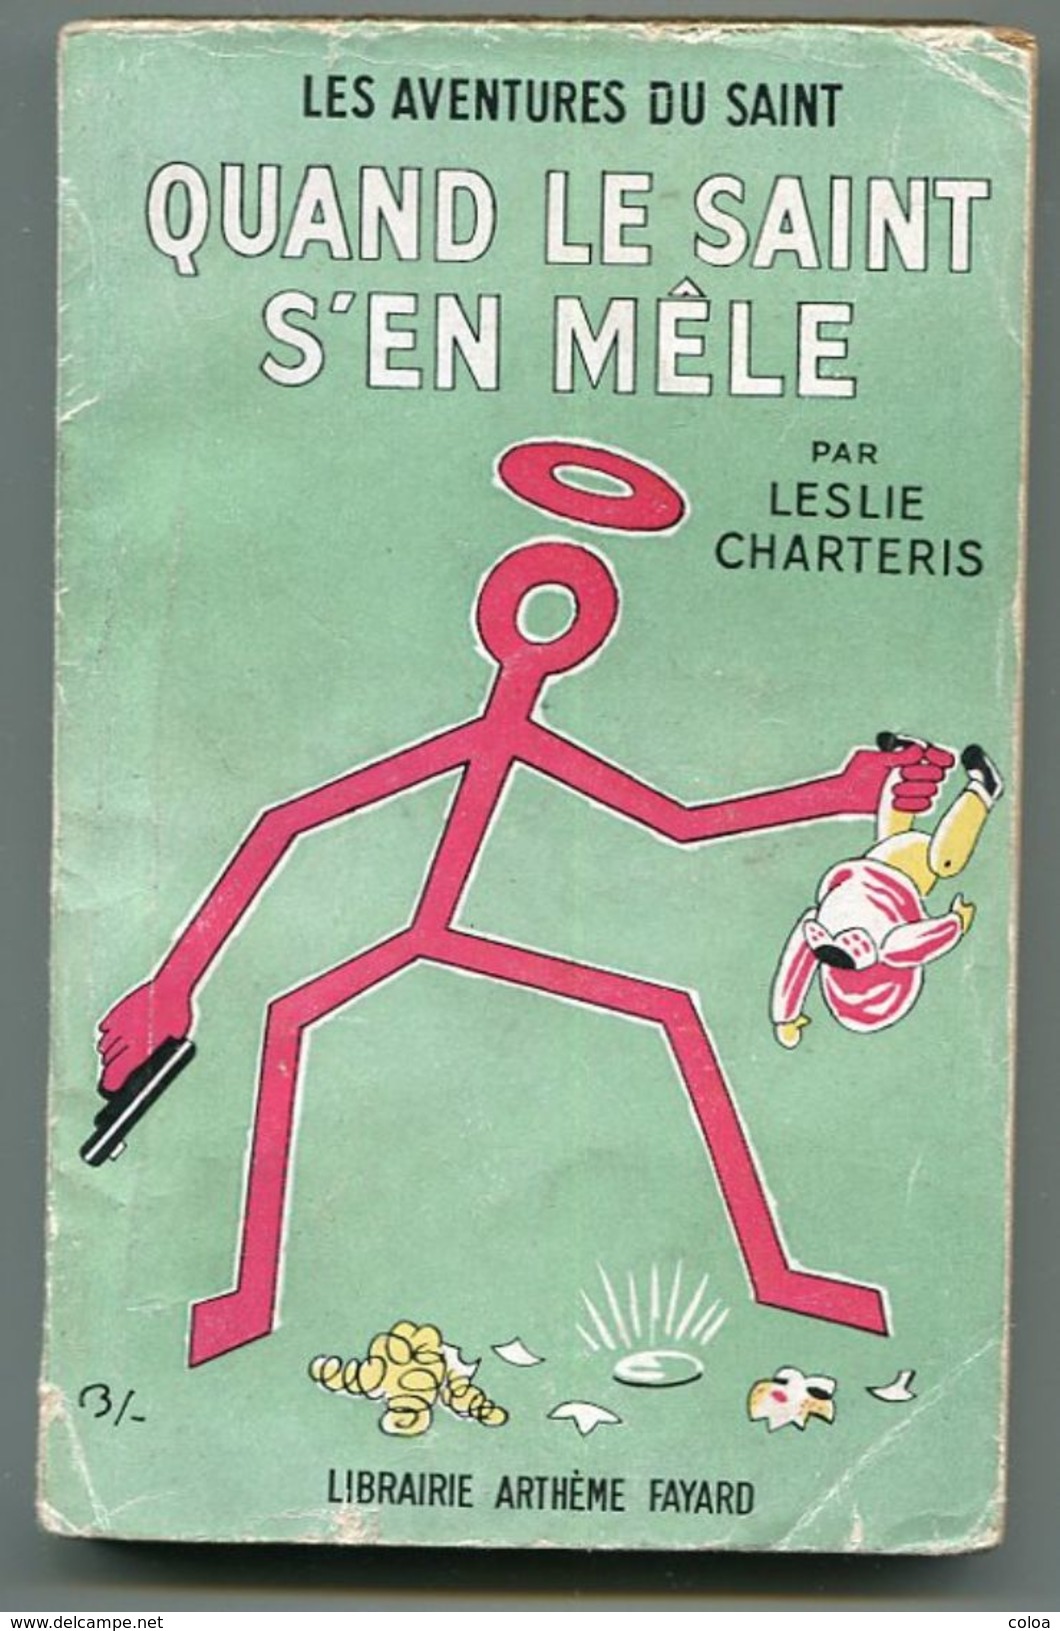 LESLIE CHARTERIS Quand Le Saint S’en Mêle 1950 - Fayard